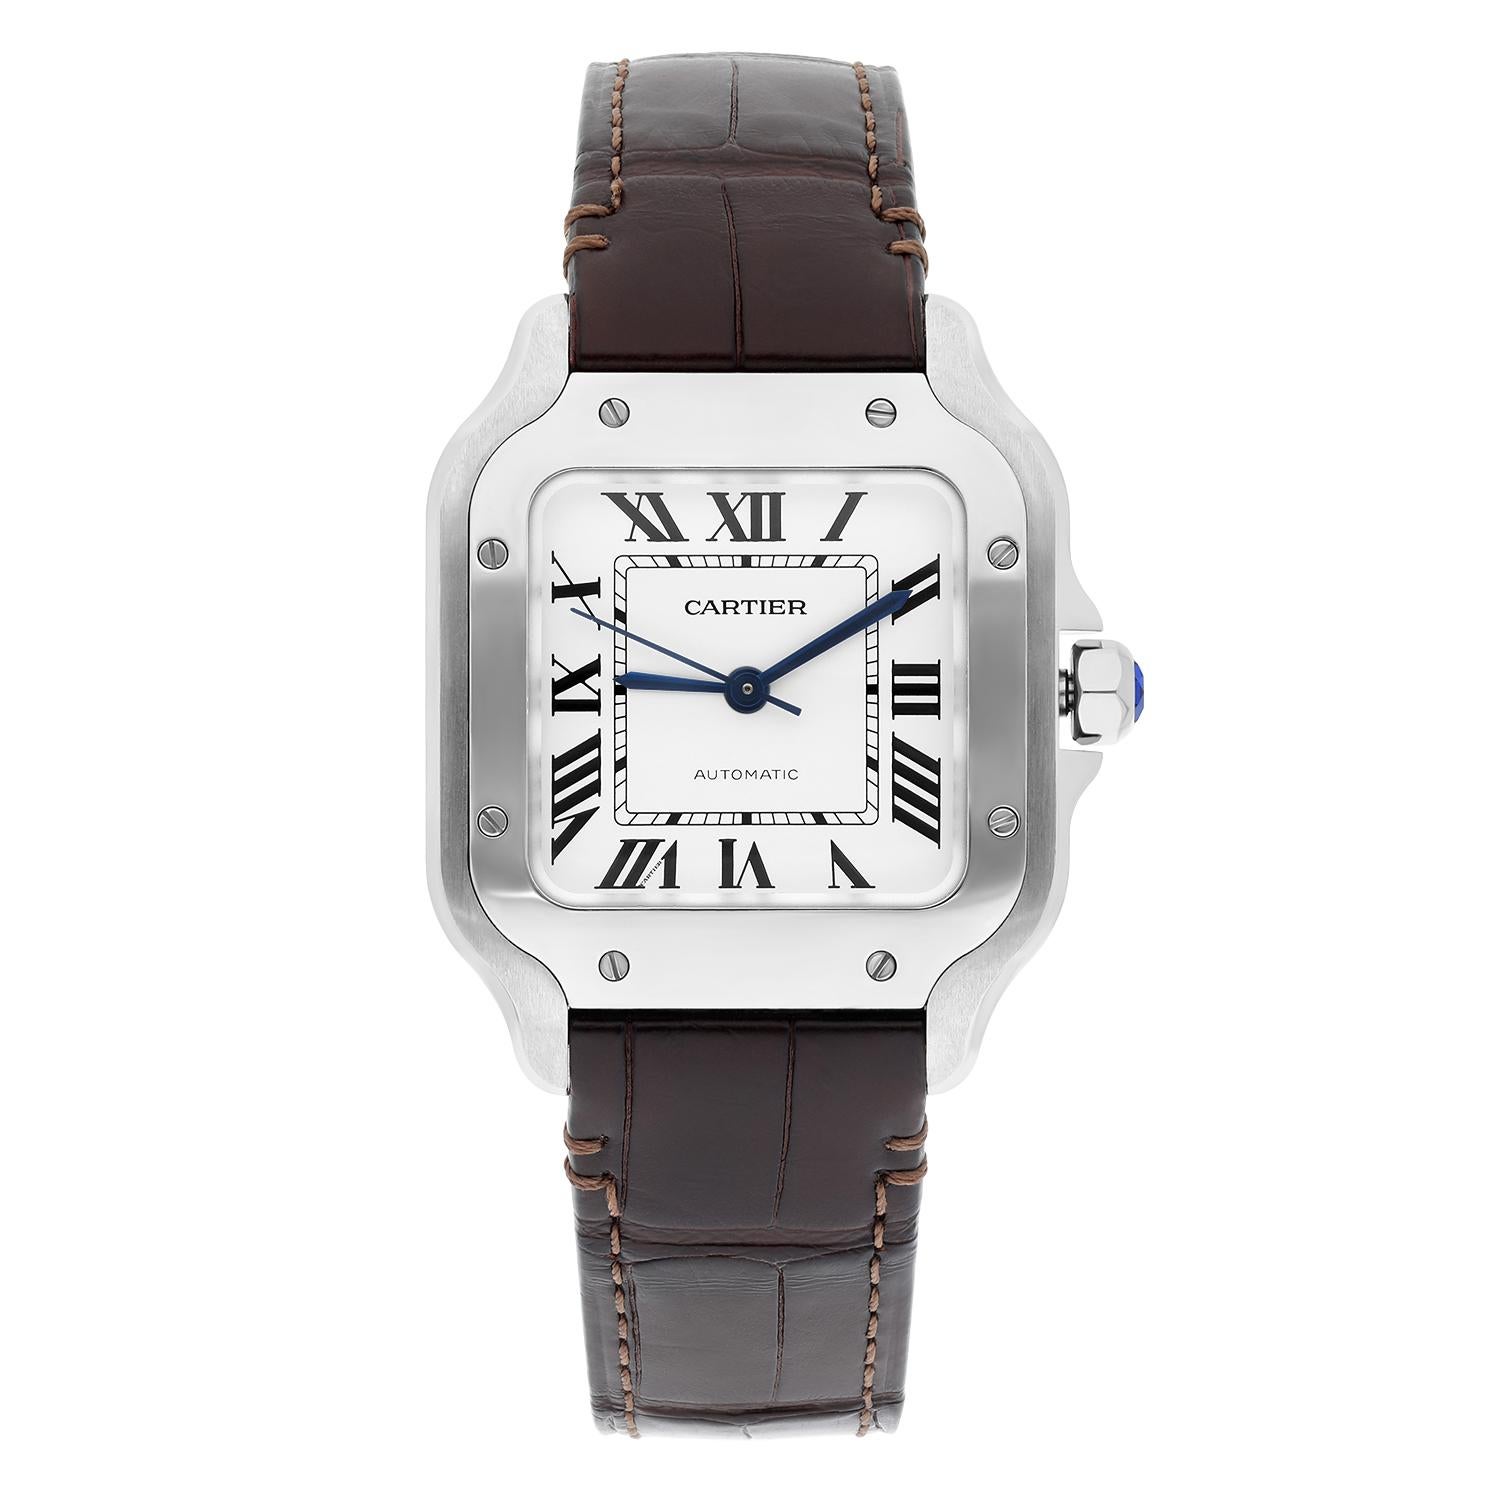 Die Uhr wurde poliert, gewartet und hat keine sichtbaren Kratzer. Es kommt nur mit dem Lederband! 
Der Verkauf umfasst Cartier Box, Schätzung Zertifikat und unsere 1 Jahr mechanische Garantie. 